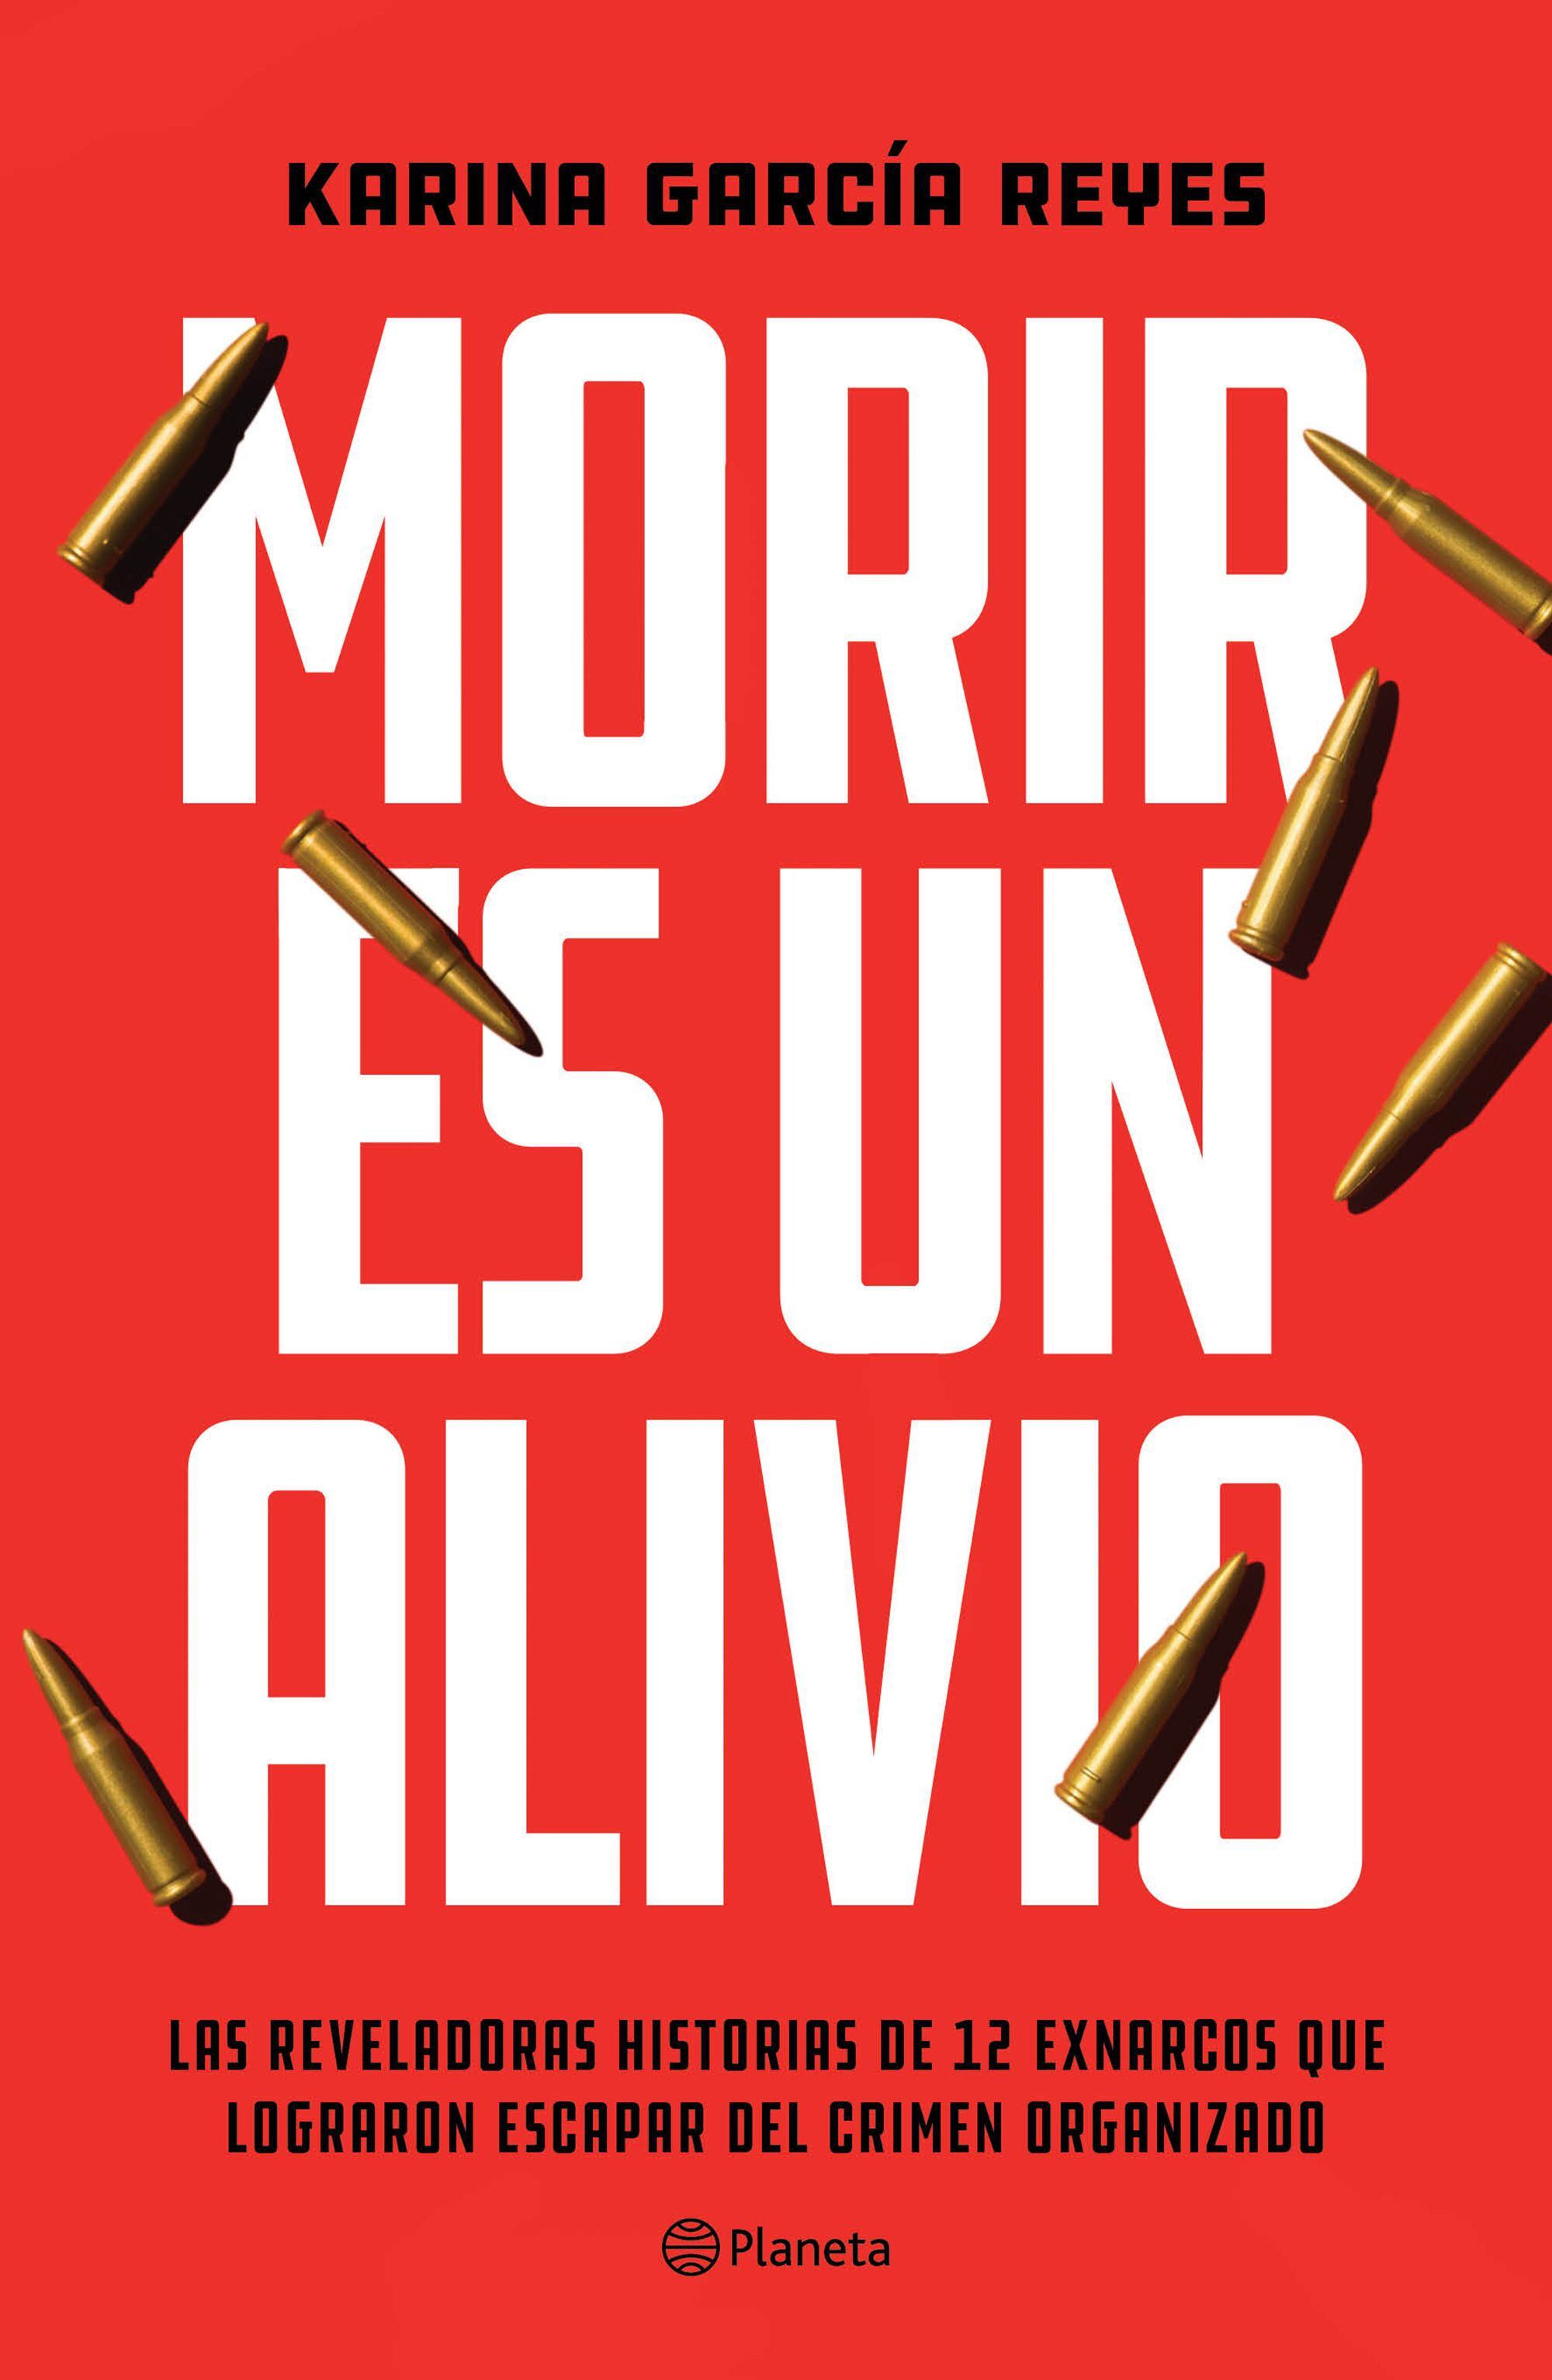 Portada del libro 'Morir es un alivio', de la académica Karina García.